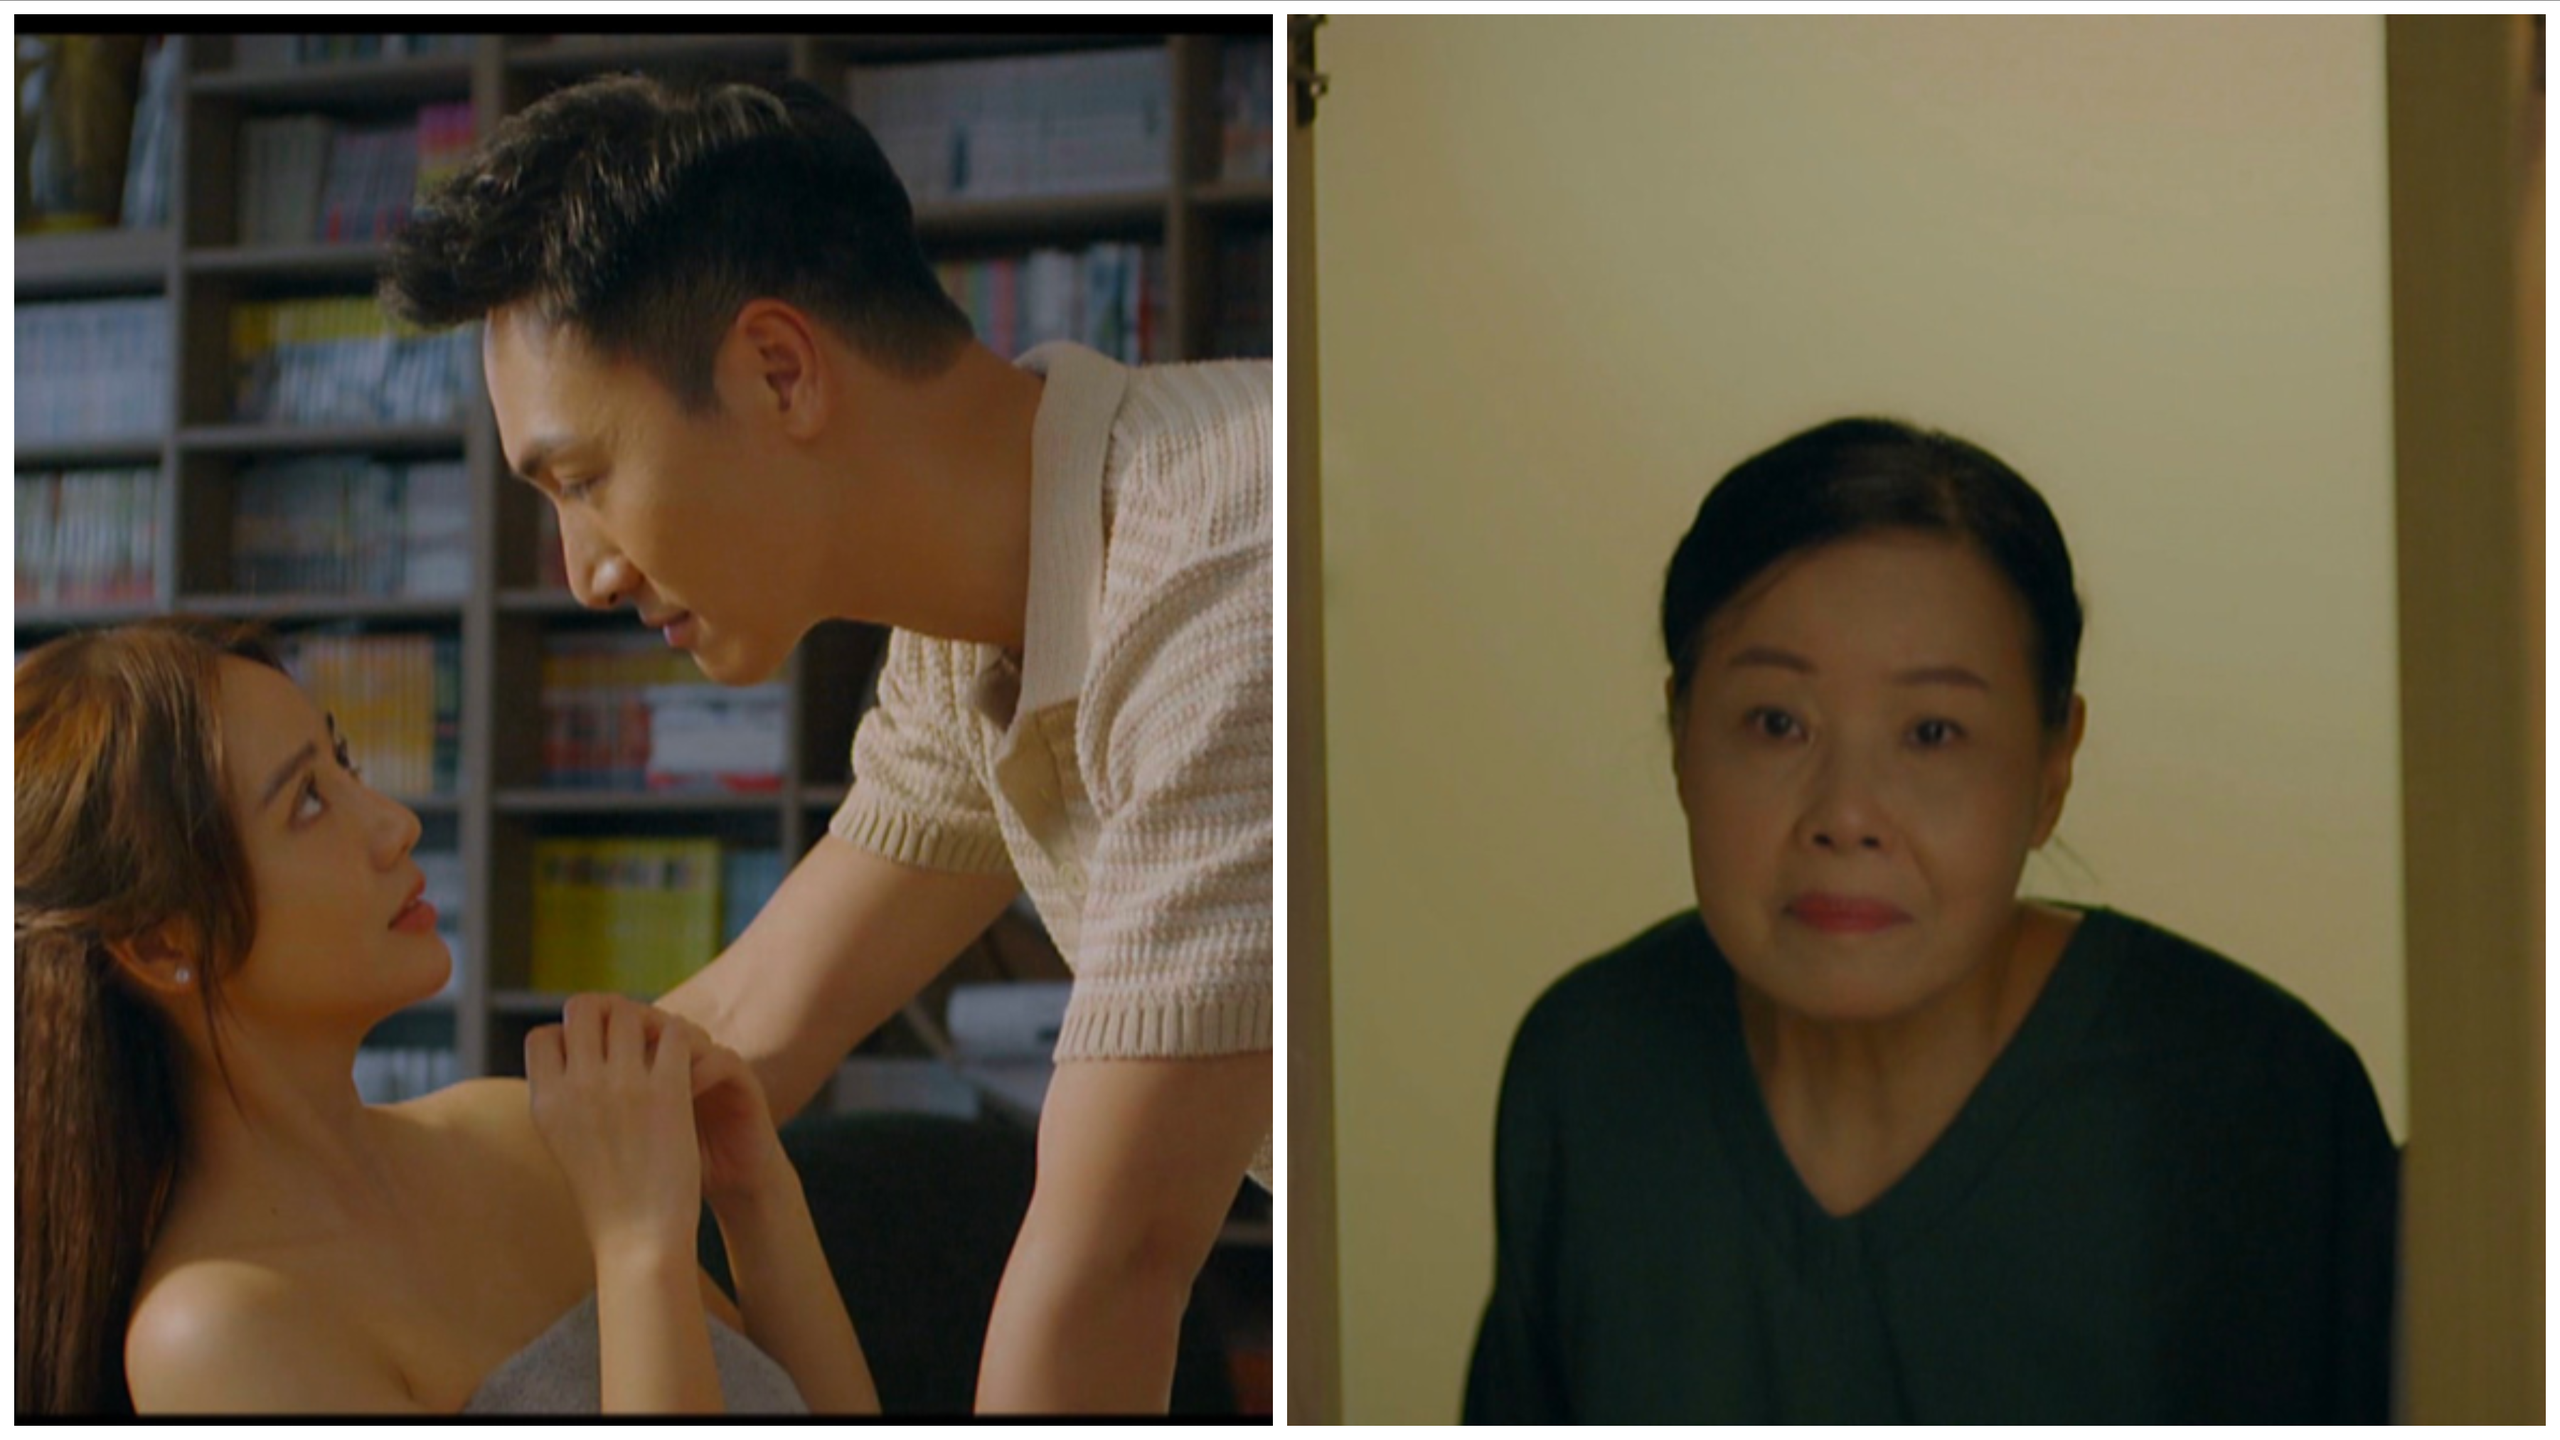 Dương ngượng ngùng khi gặp mẹ của Lâm đúng lúc cả hai đang trong cảnh rất thân mật.